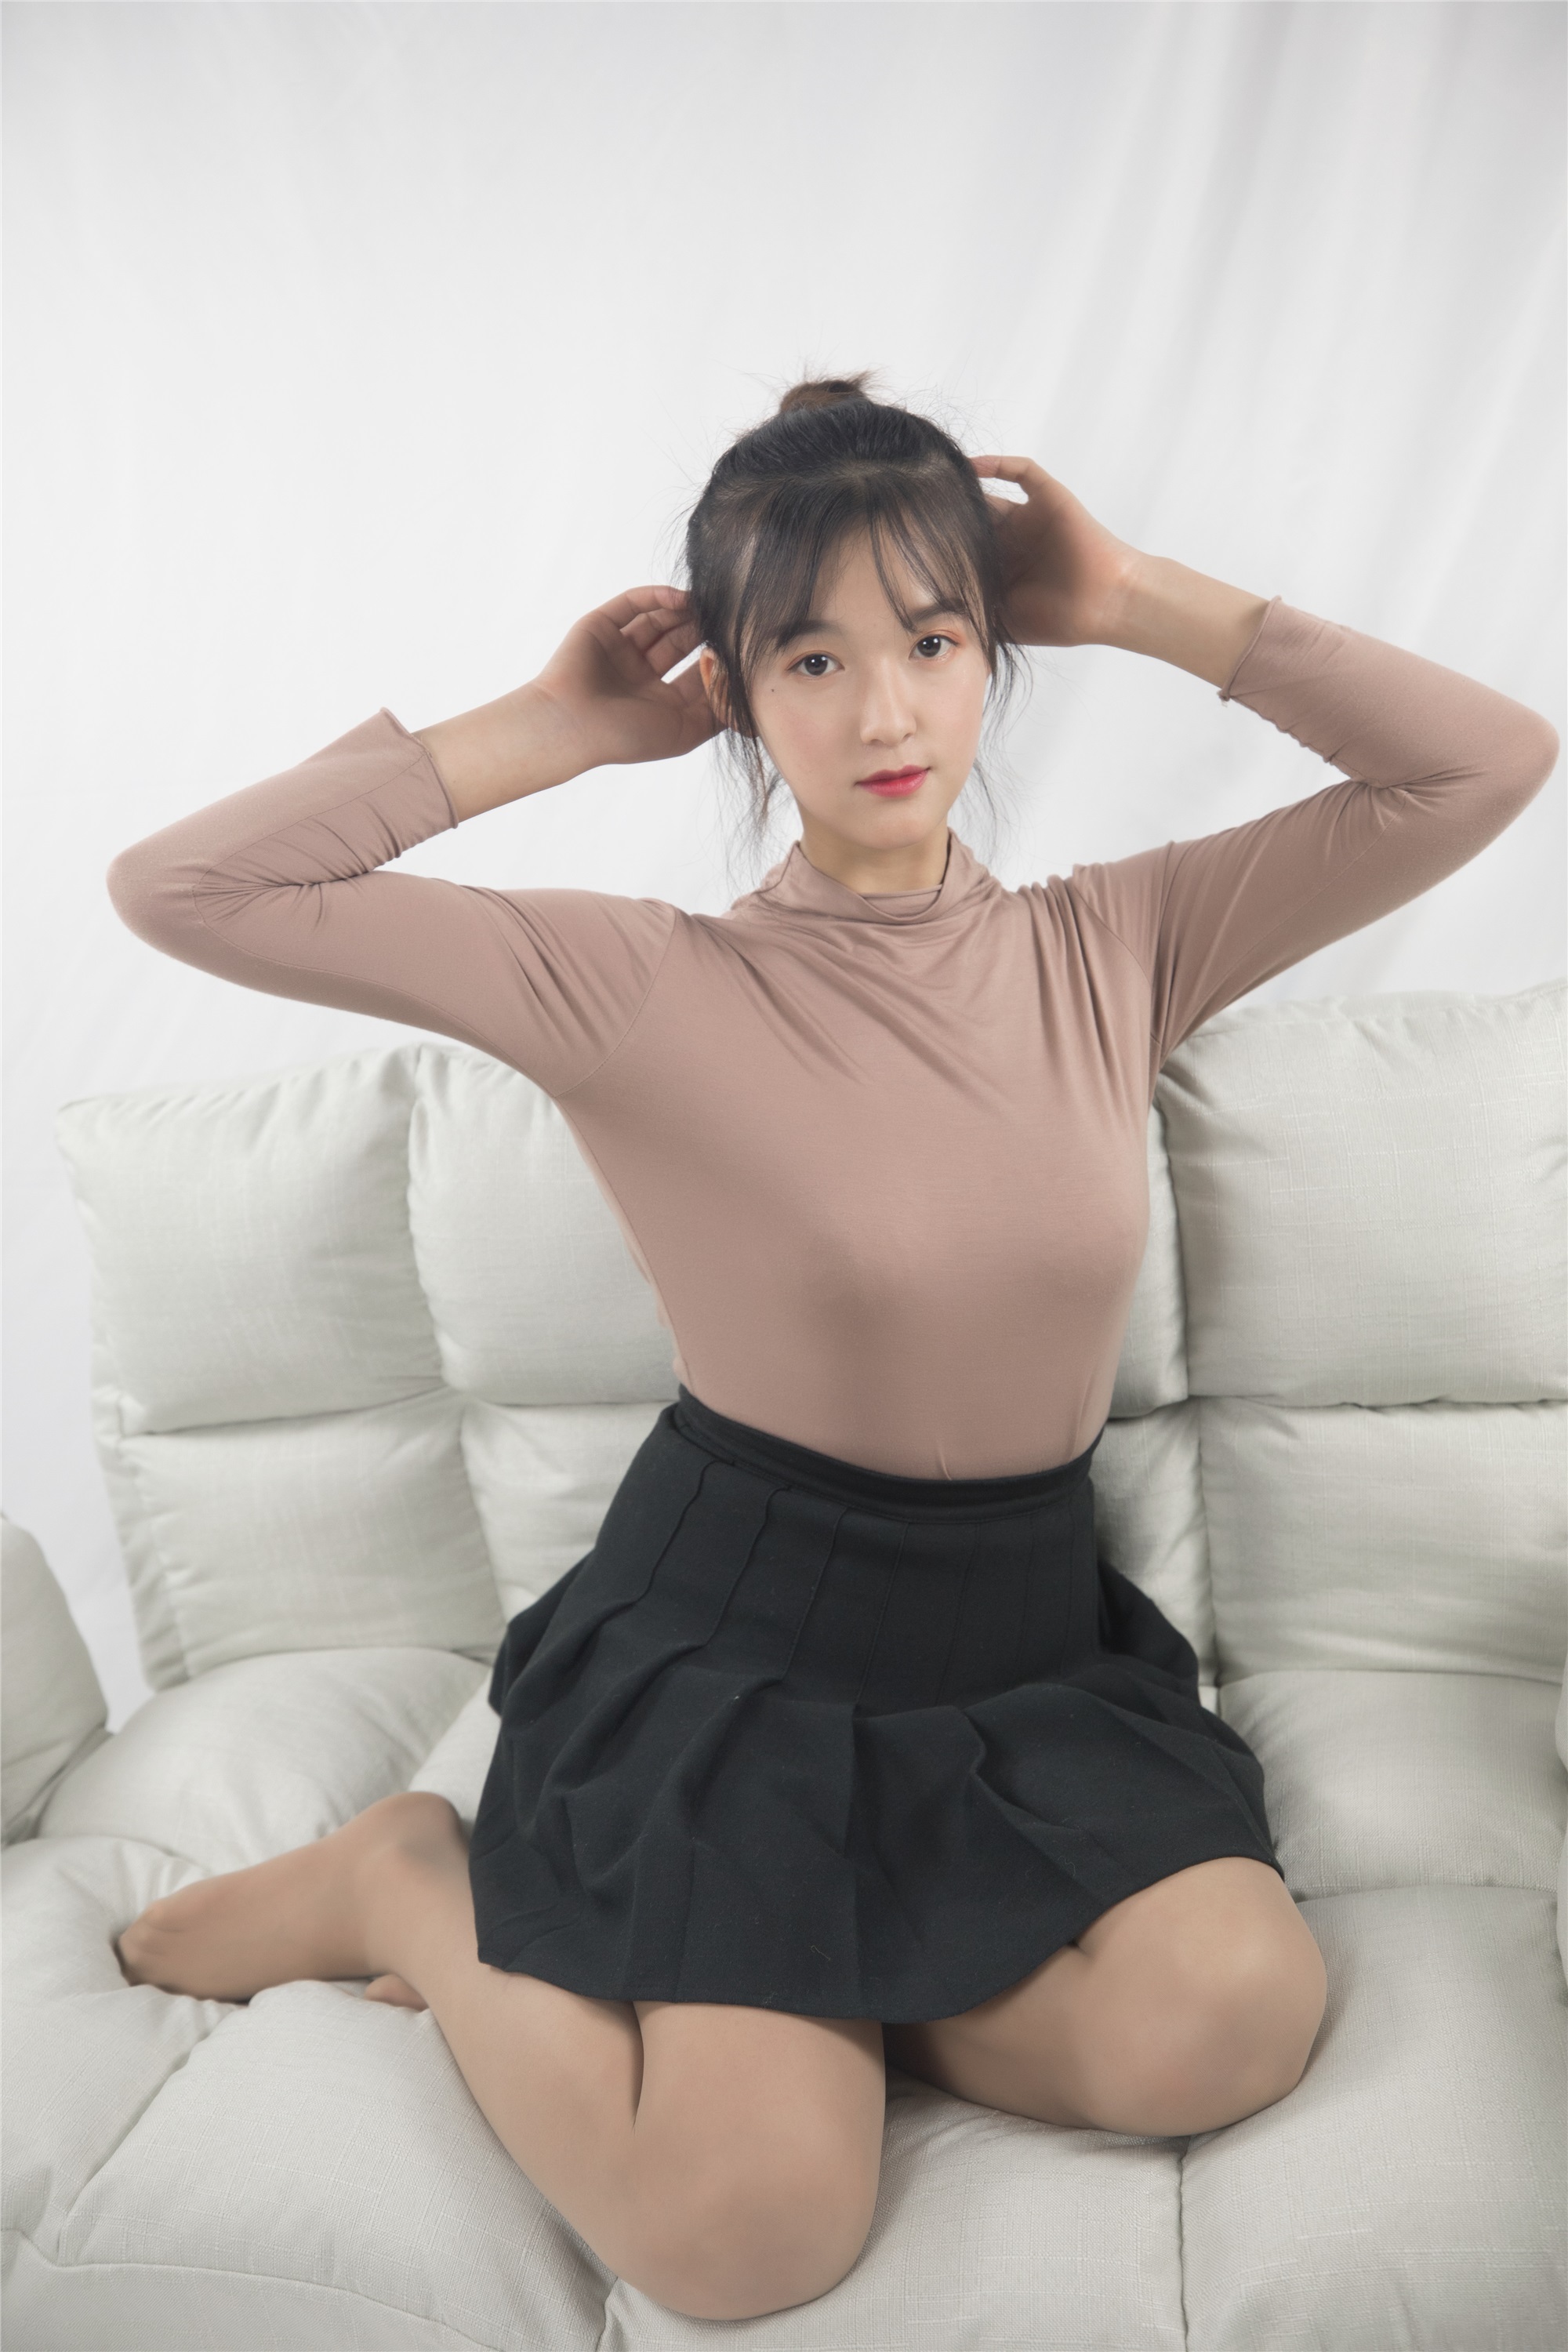 Mslass dream goddess December 12, 2019 Vol.082 Miss Chen Ling's decent figure